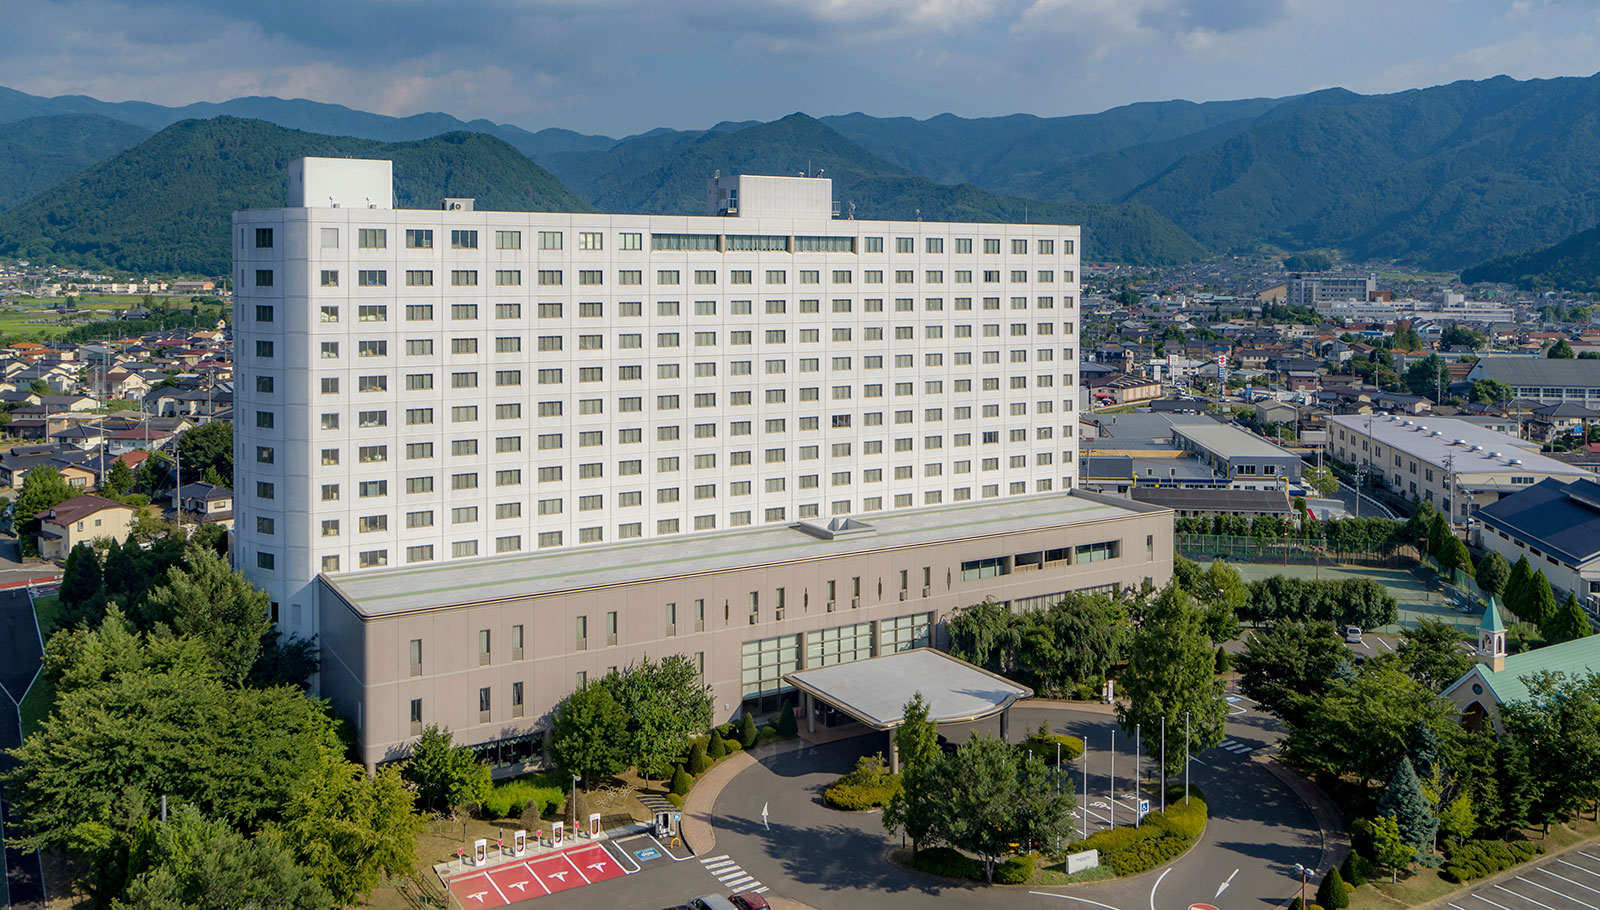 Main visual image | Mercure Nagano Matsushiro Resort & Spa